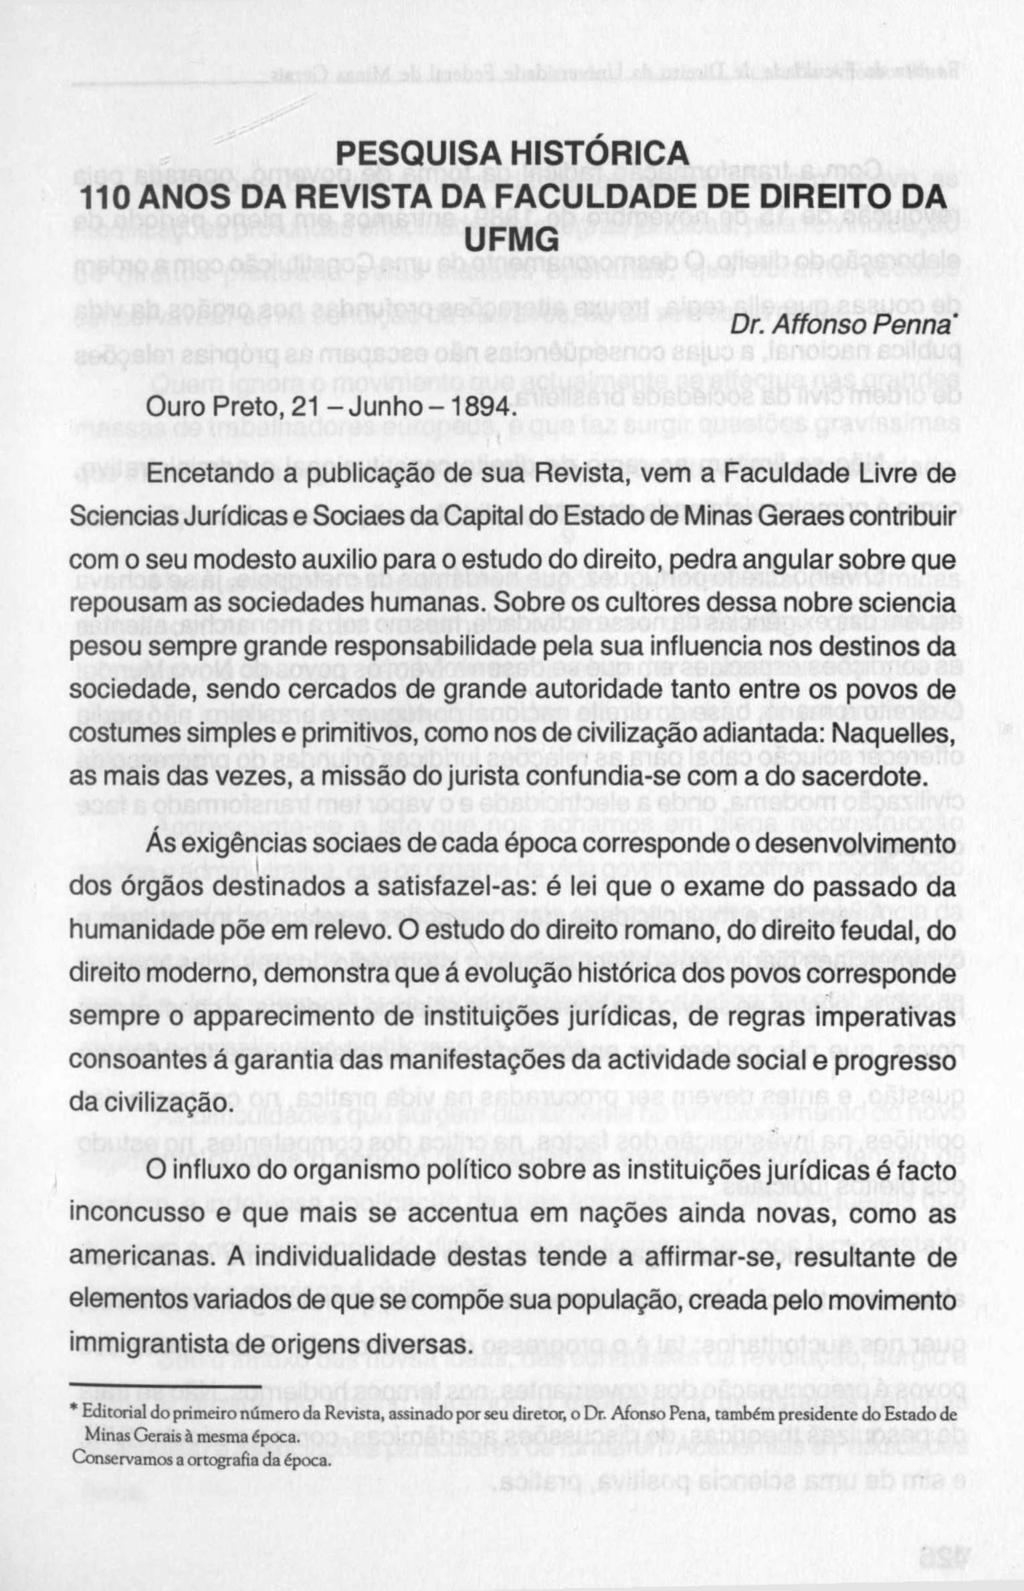 PESQUISA HISTÓRICA 110 ANOS DA REVISTA DA FACULDADE DE DIREITO DA UFMG Dr. Affonso Penná Ouro Preto, 21 - Junho -1894.